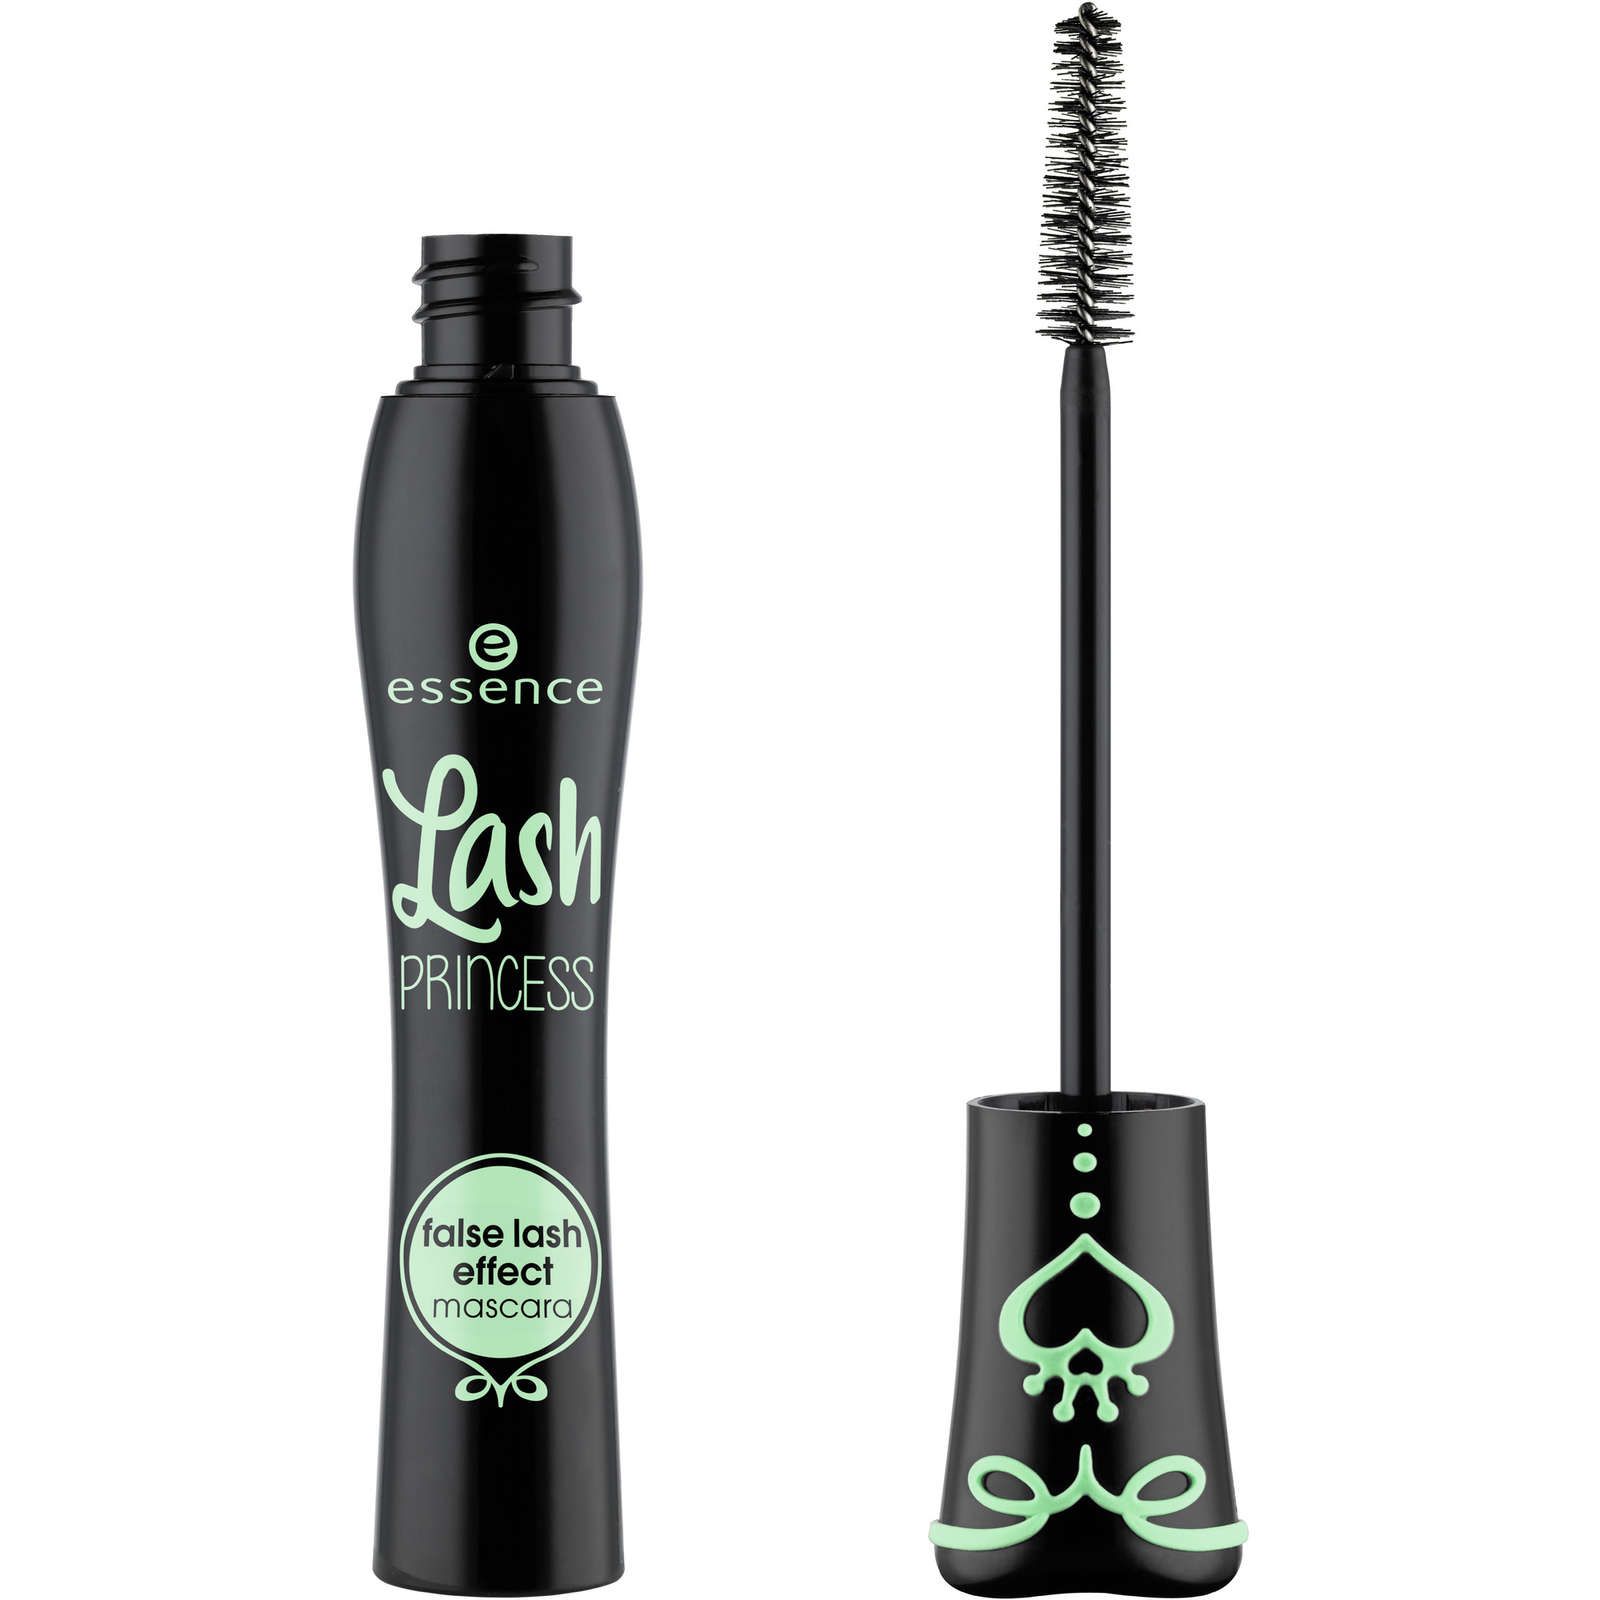 lash princess false lash mascara | Shoppers Drug Mart – Beauty